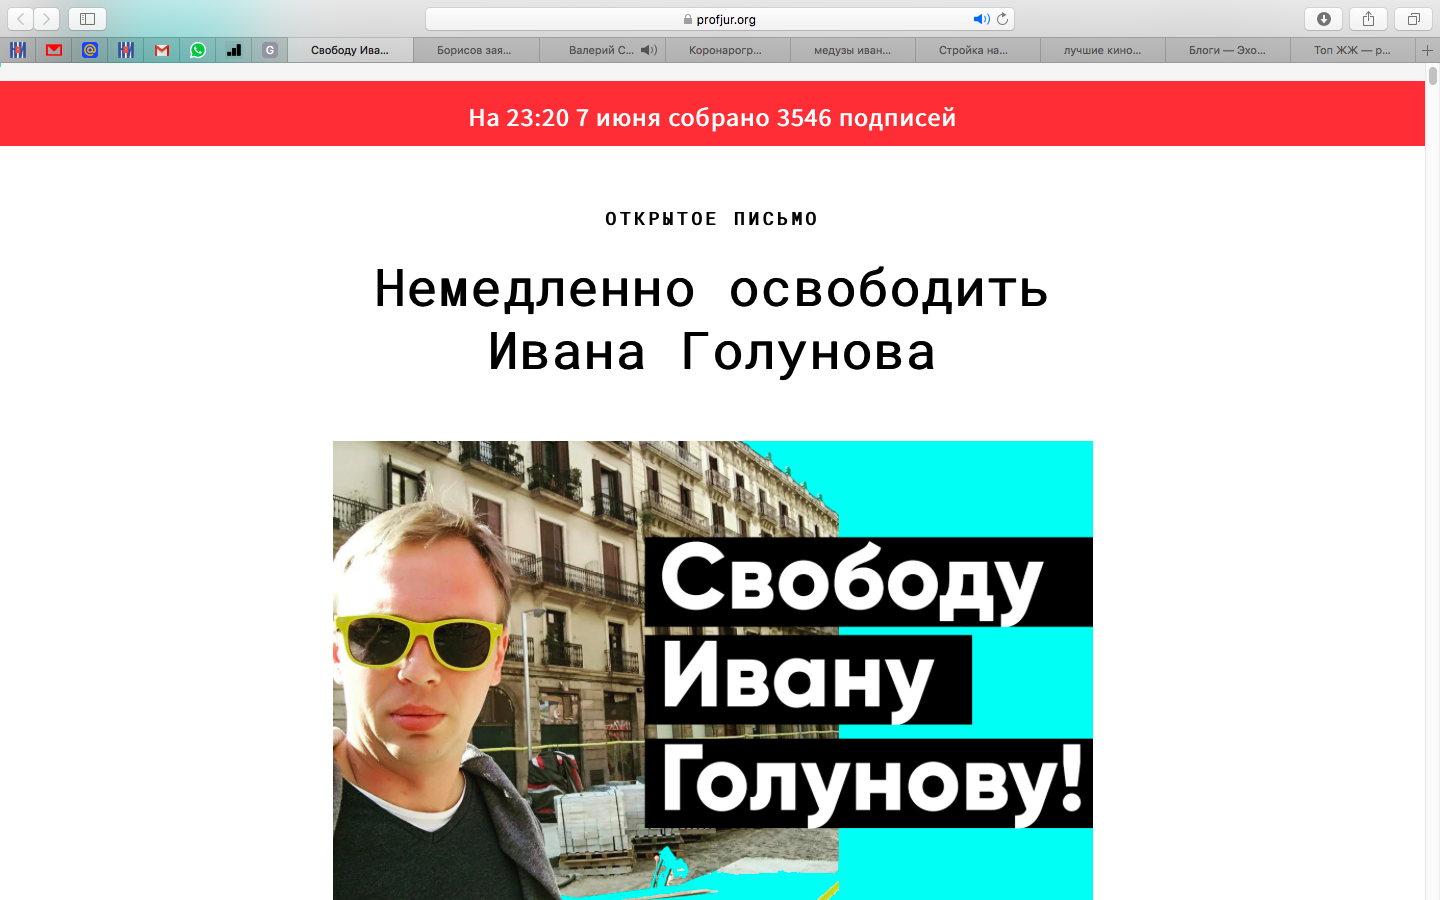 Петиции в защиту Ивана Голунова набрали уже около 50 тысяч подписей